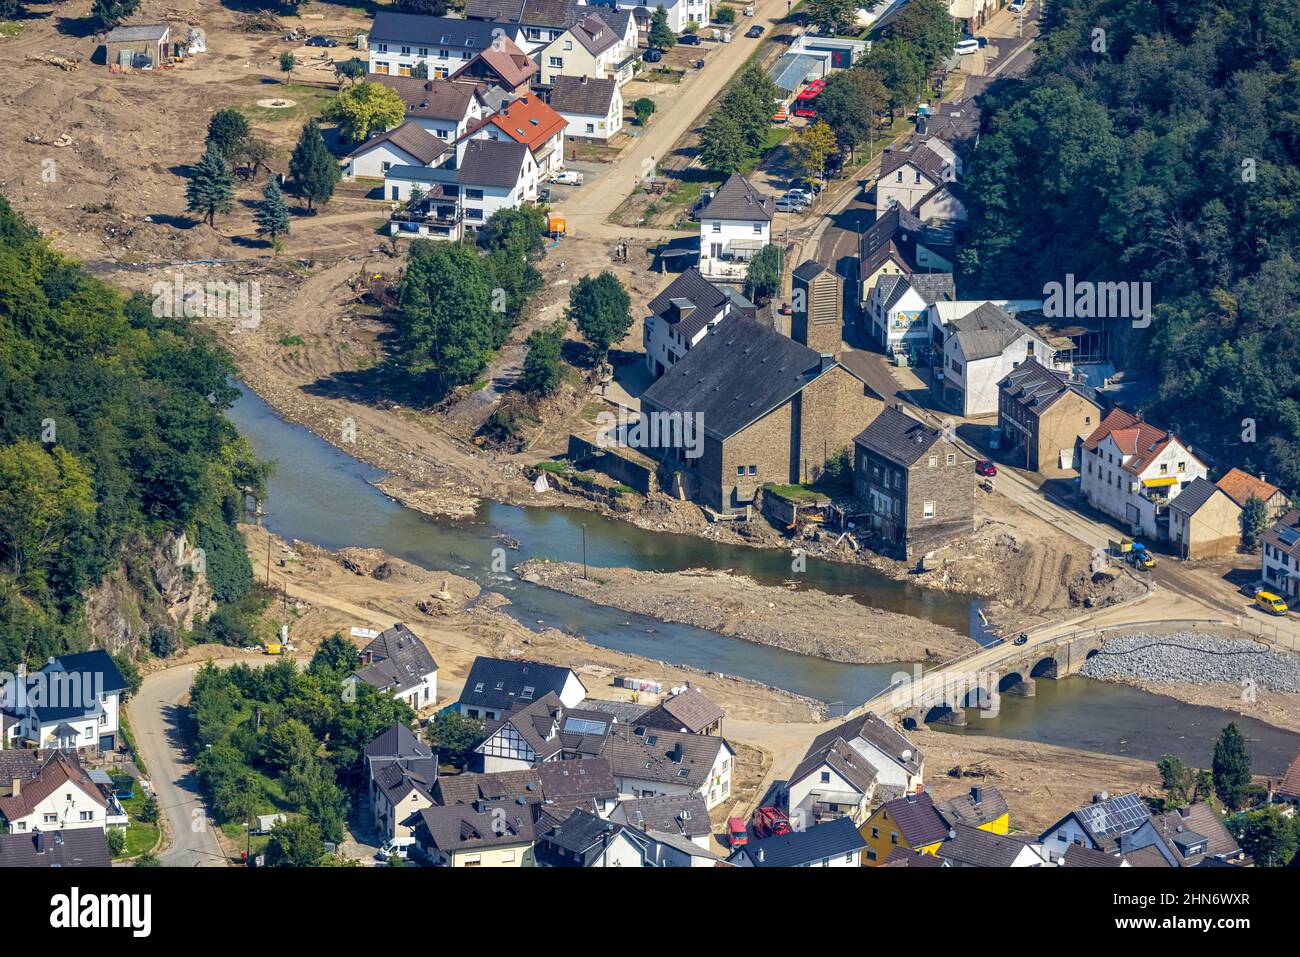 Luftbild, Überschwemmungsgebiet am Fluss Ahr mit Ahrbrücke und St. Andreas Kirche im Ortsteil Brück, Ahrbrück, Ahr-Hochwasser, Ahrtal, Rheinland-Pfalz Foto Stock